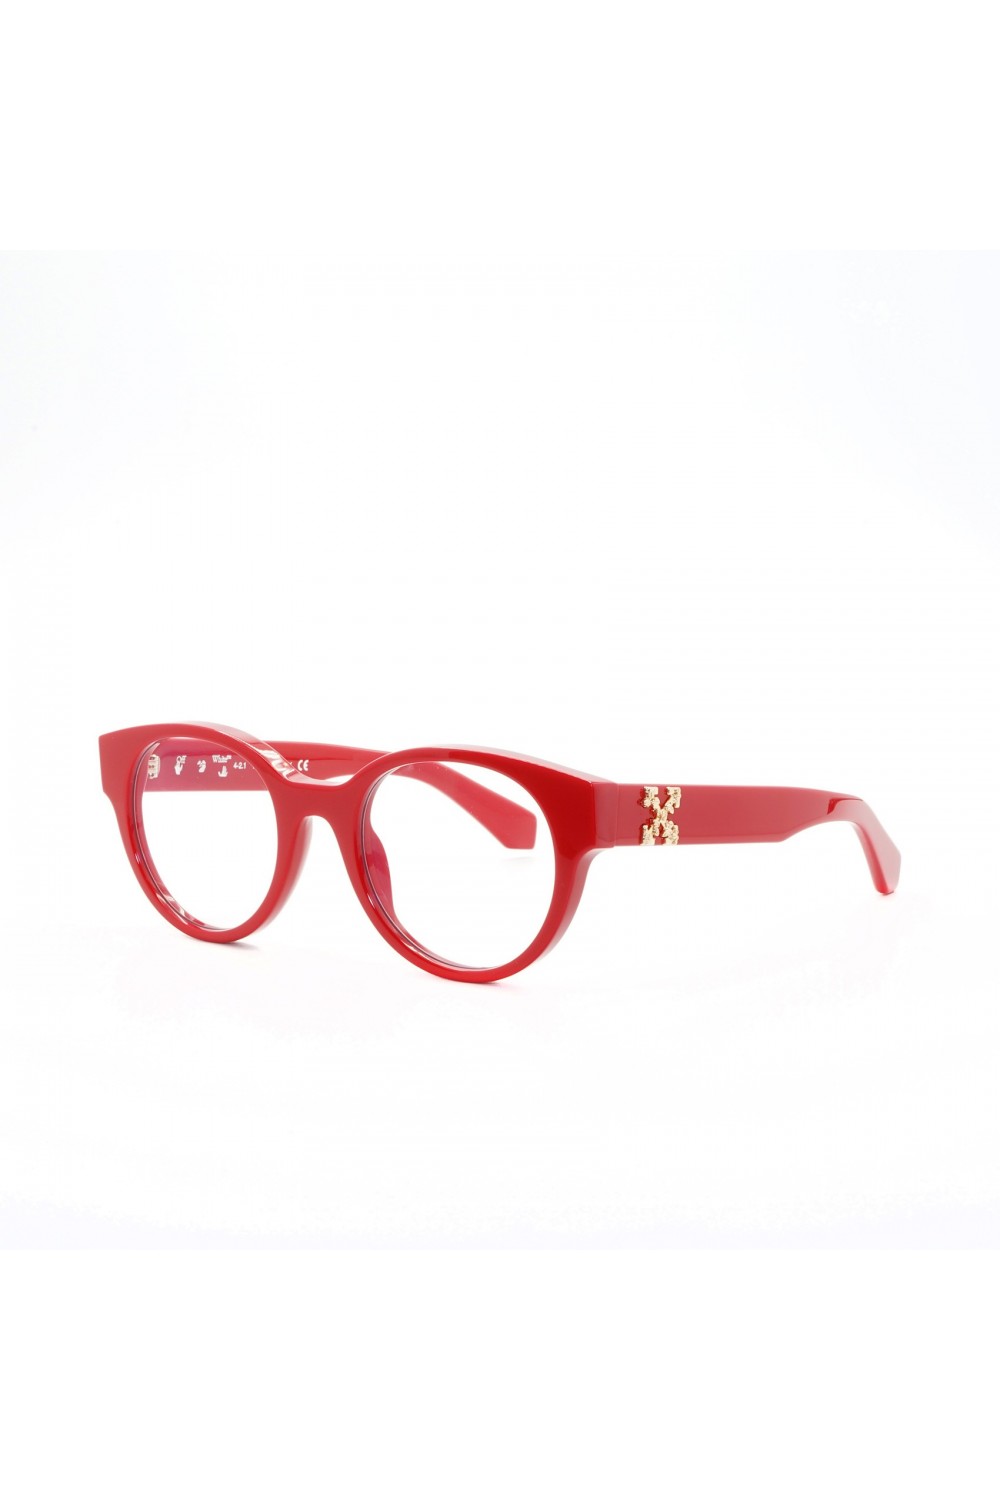 Off-White - Occhiali da vista in celluloide tondi unisex rosso - OERJ002 2500